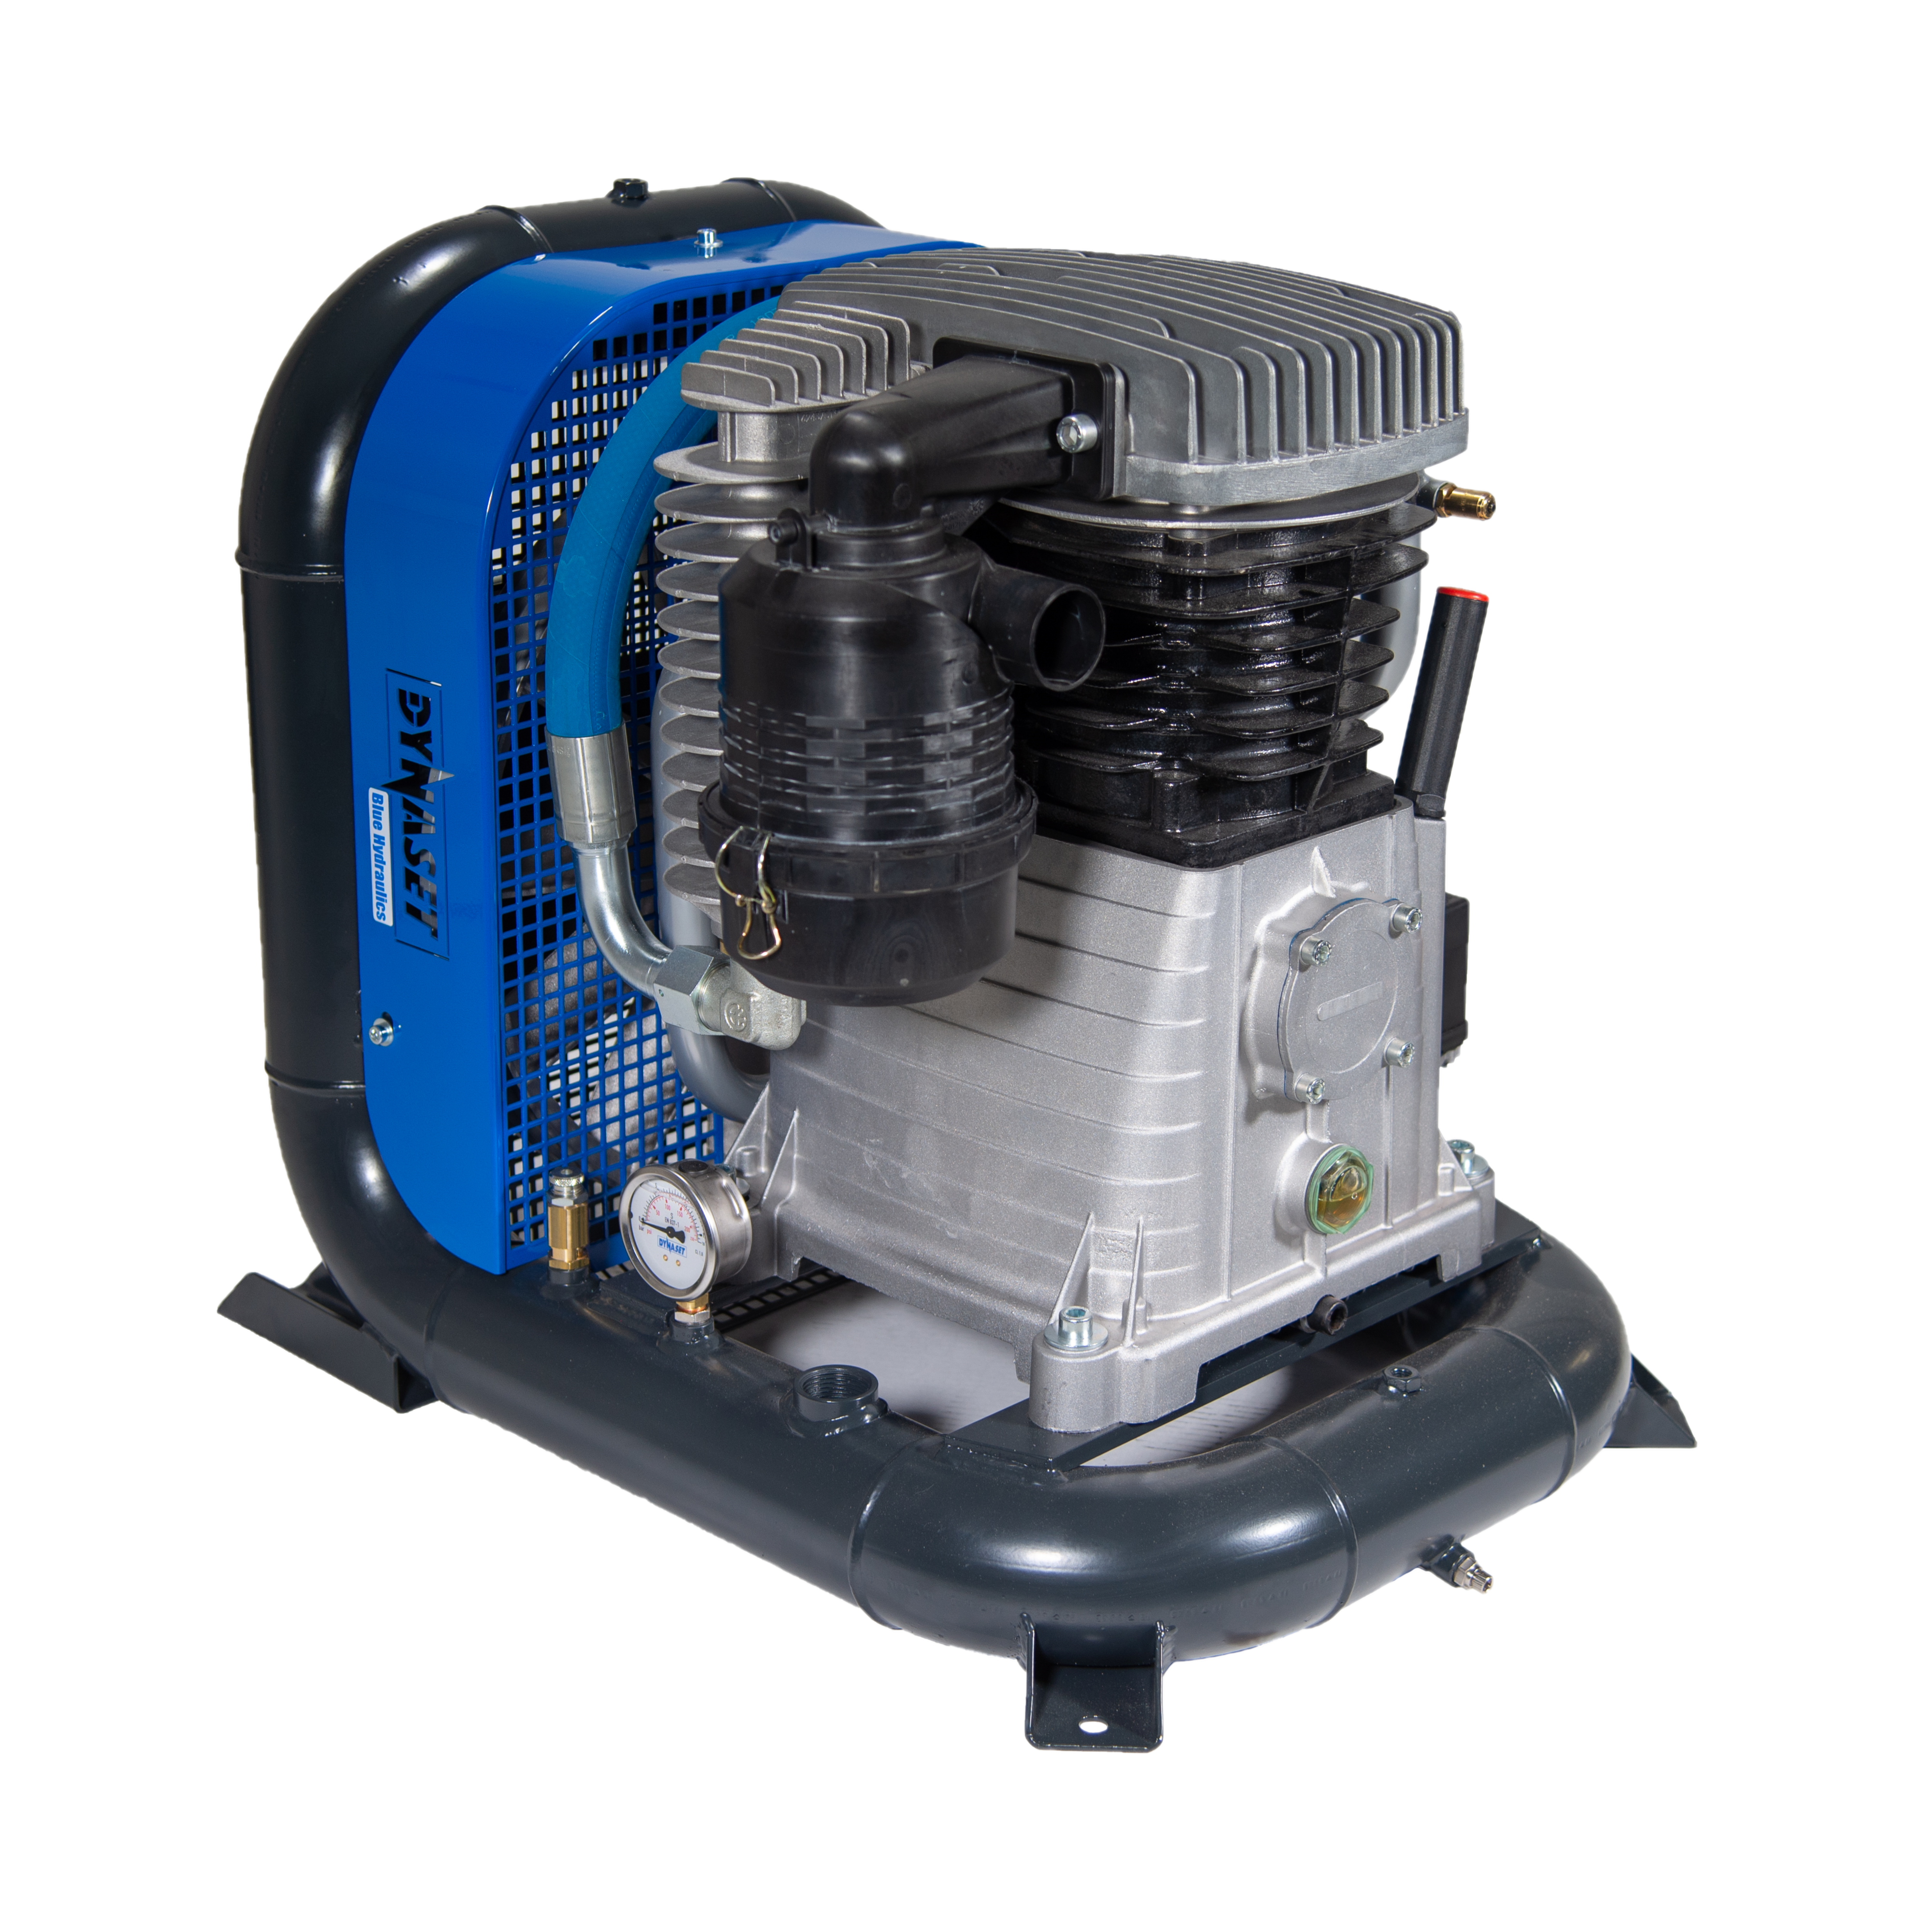 HK1000 - Hydraulically driven pneumatic piston compressor 1,000 L/min. at max. 12 bar (174 PSI)